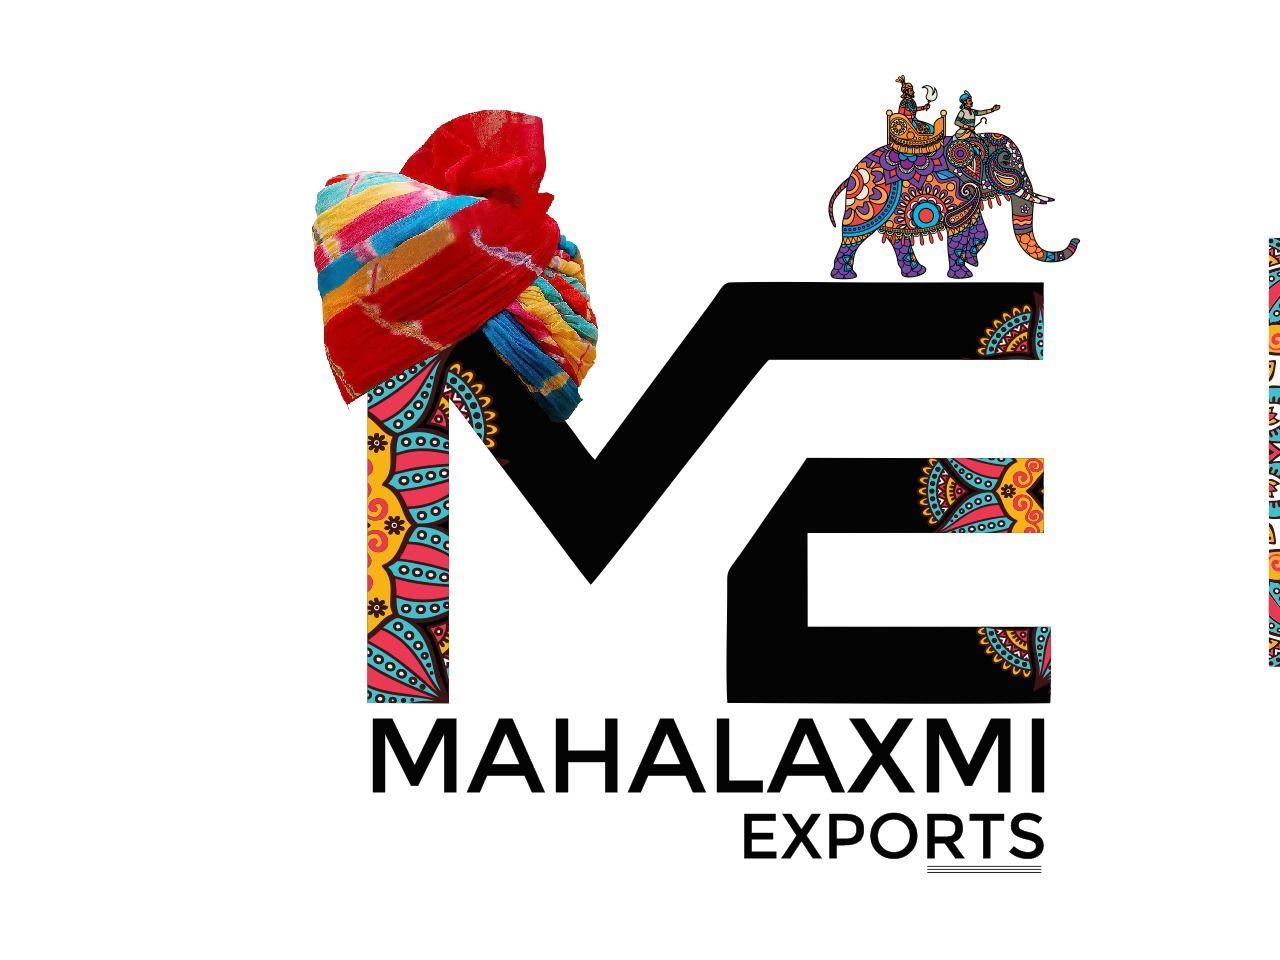 MAHALAXMI EXPORTS